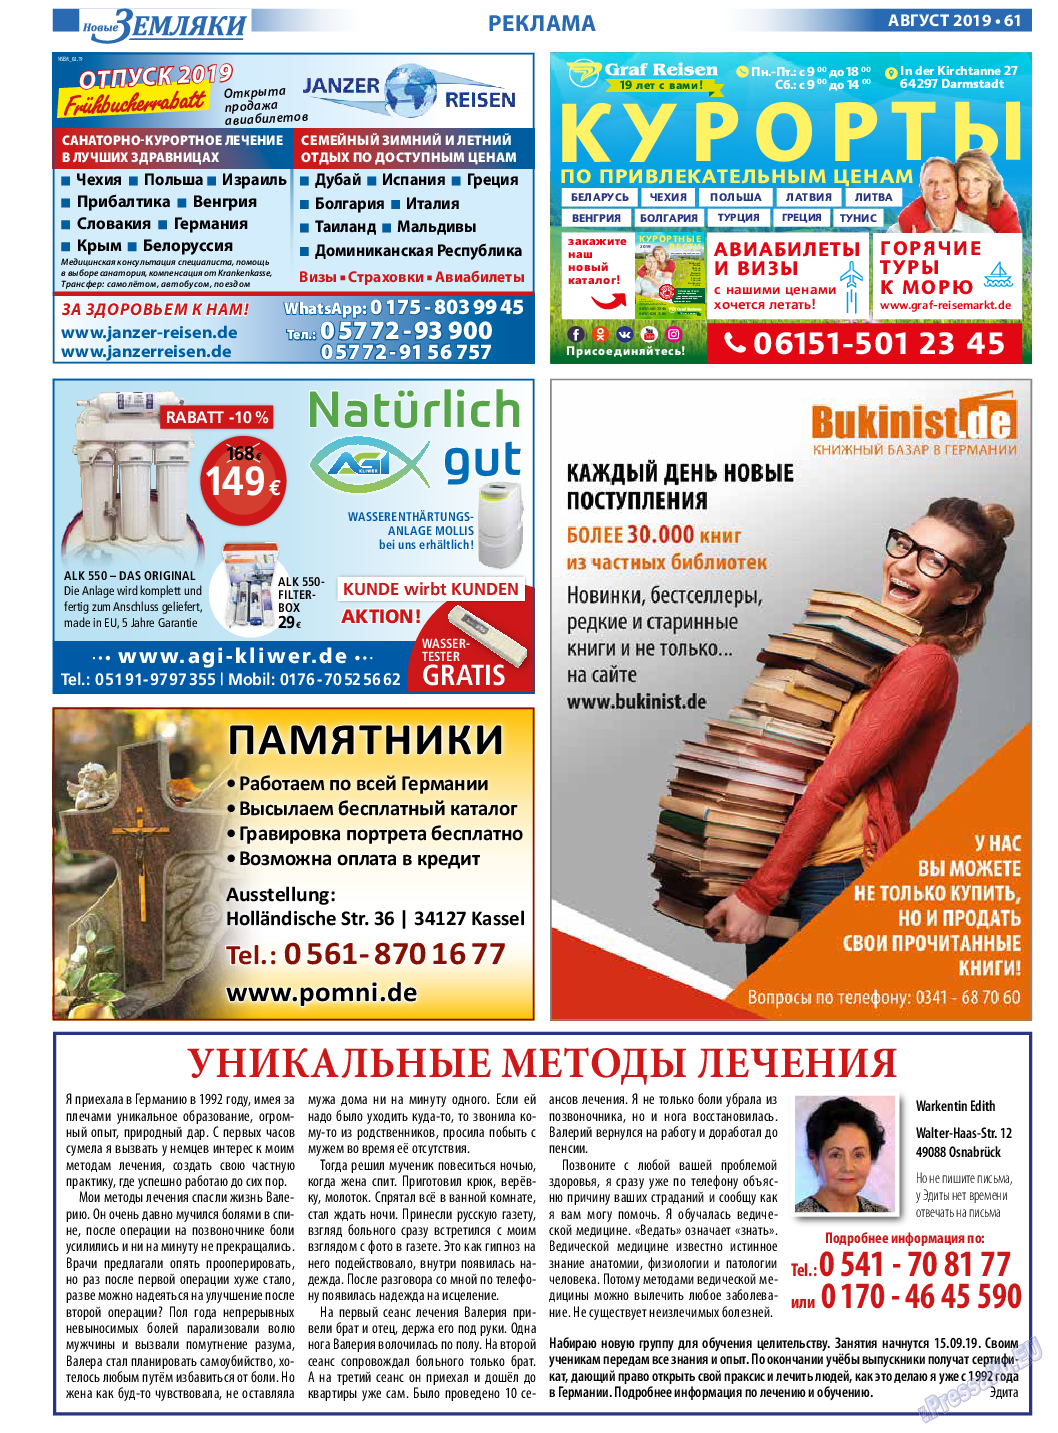 Новые Земляки, газета. 2019 №8 стр.61